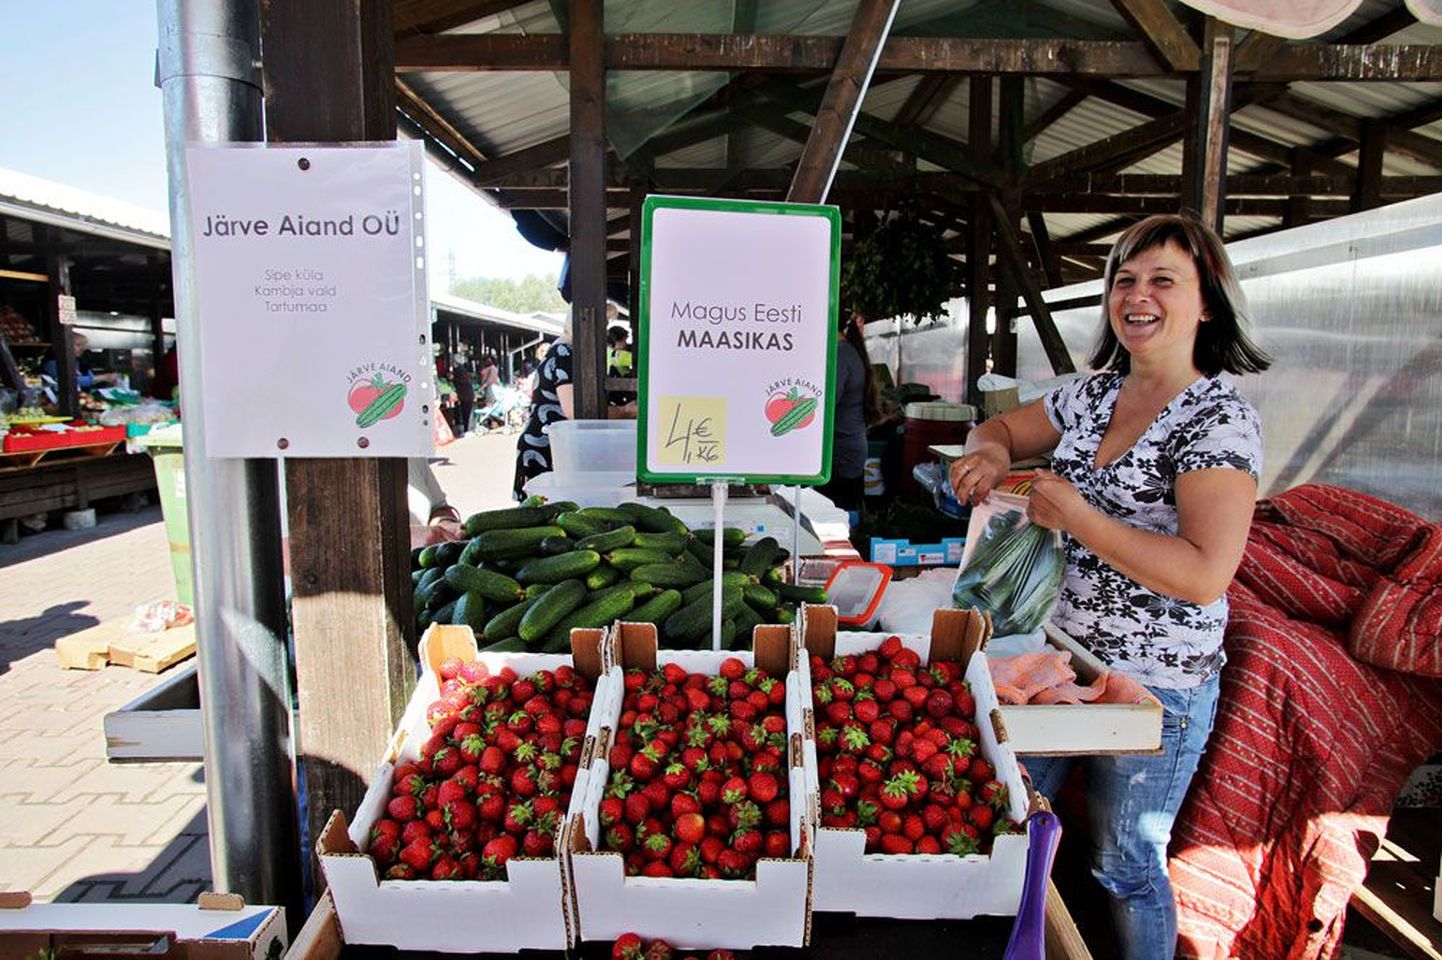 Nädal tagasi müüs Maarika Kivi Eesti maasikaid 12-eurose kilohinnaga. Eile pakkus ta väiksemaid kodumaiseid marju aga kolm korda odavamalt ehk nelja euroga kilo eest. Seevastu kurgi hind on Kivi sõnul jaanipäeva eel tõusnud.